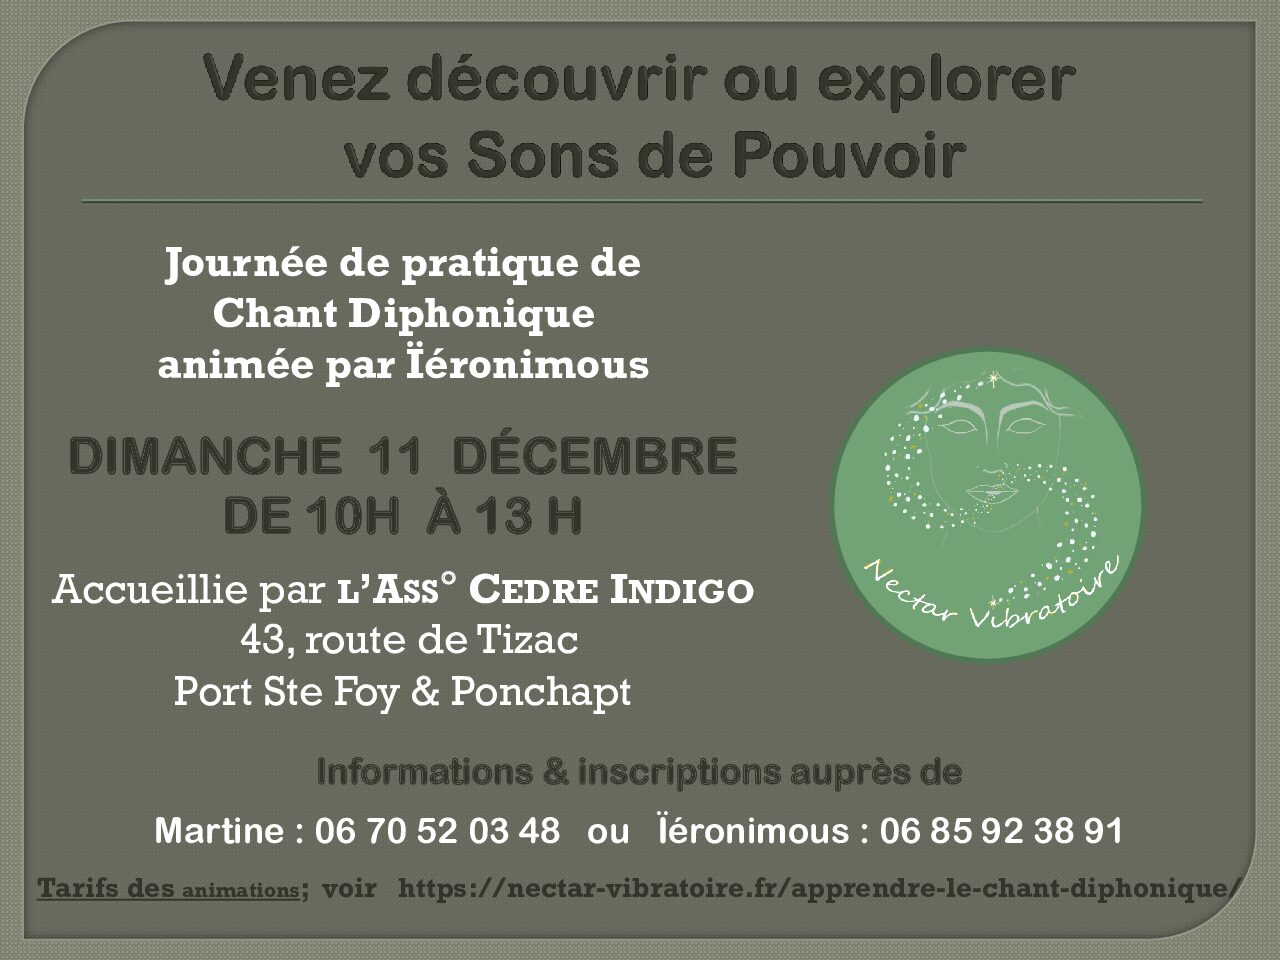 Atelier de Chant Diphonique le 11 décembre à Port Ste Foy & Ponchapt